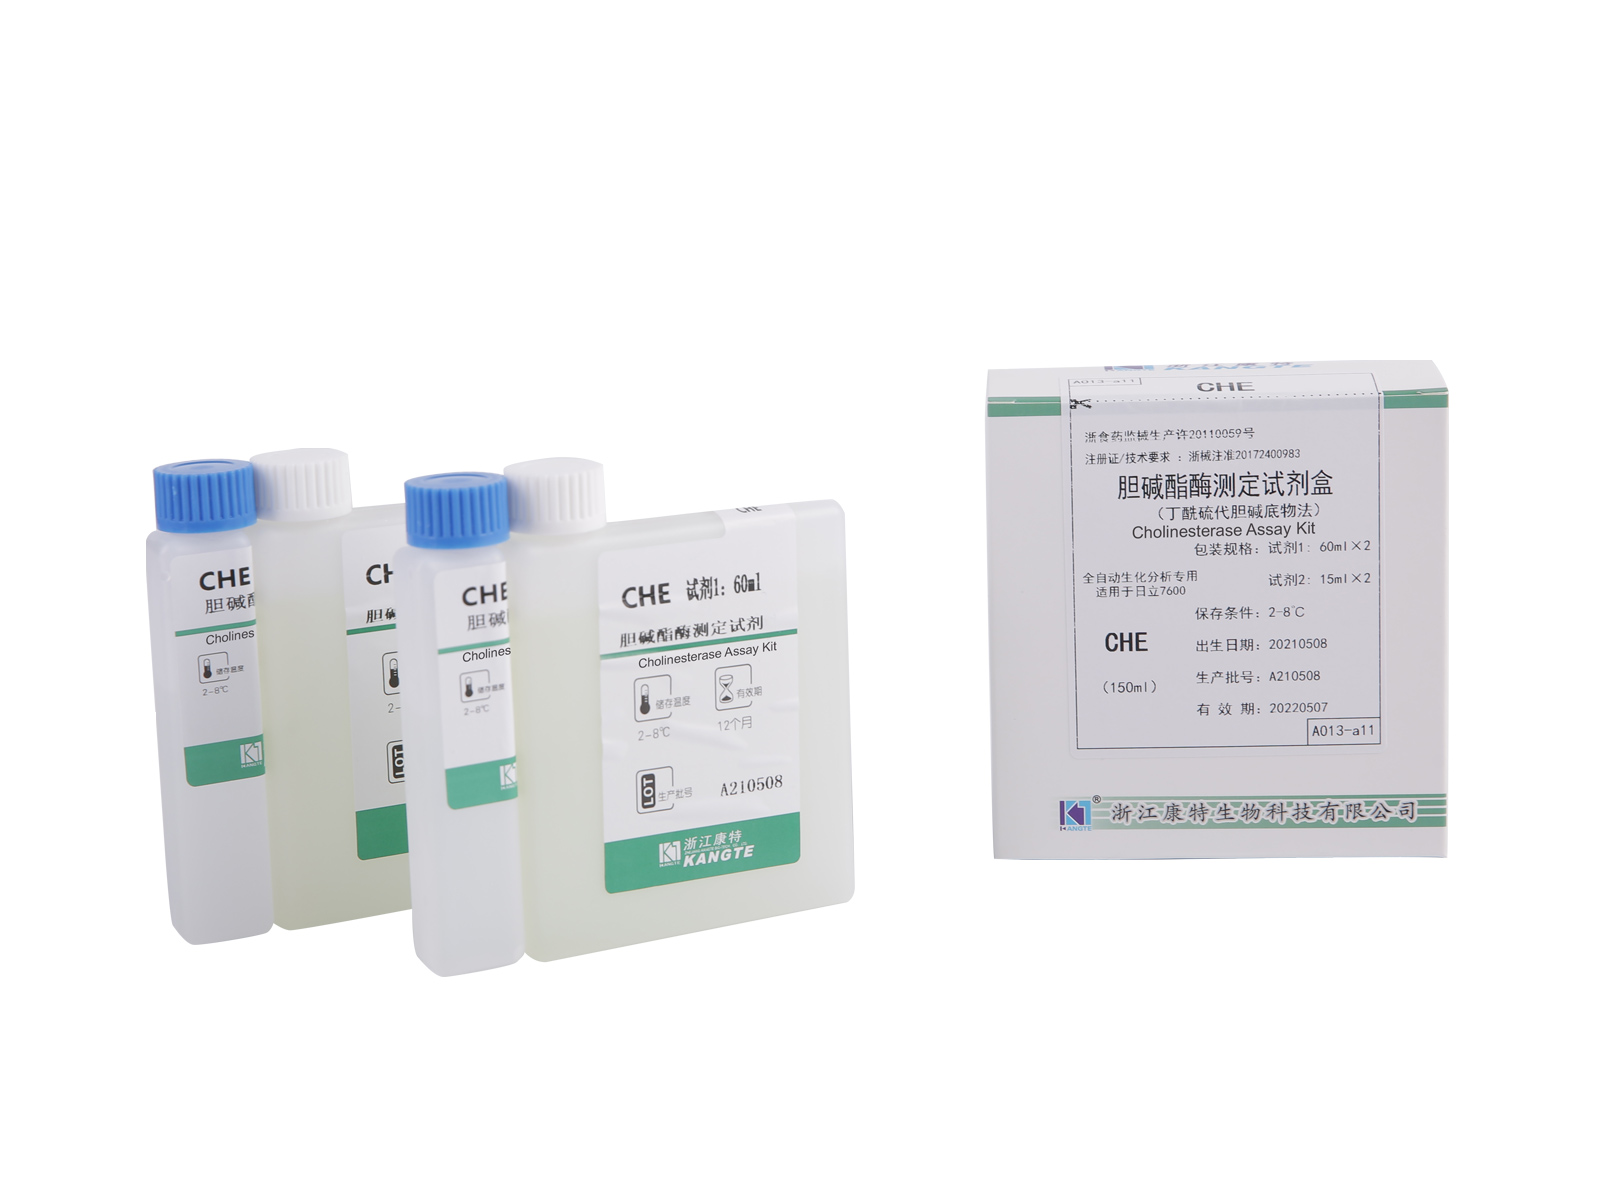 【CHE】 Kit de dosage de la cholinestérase (méthode du substrat de butyrylthiocholine)